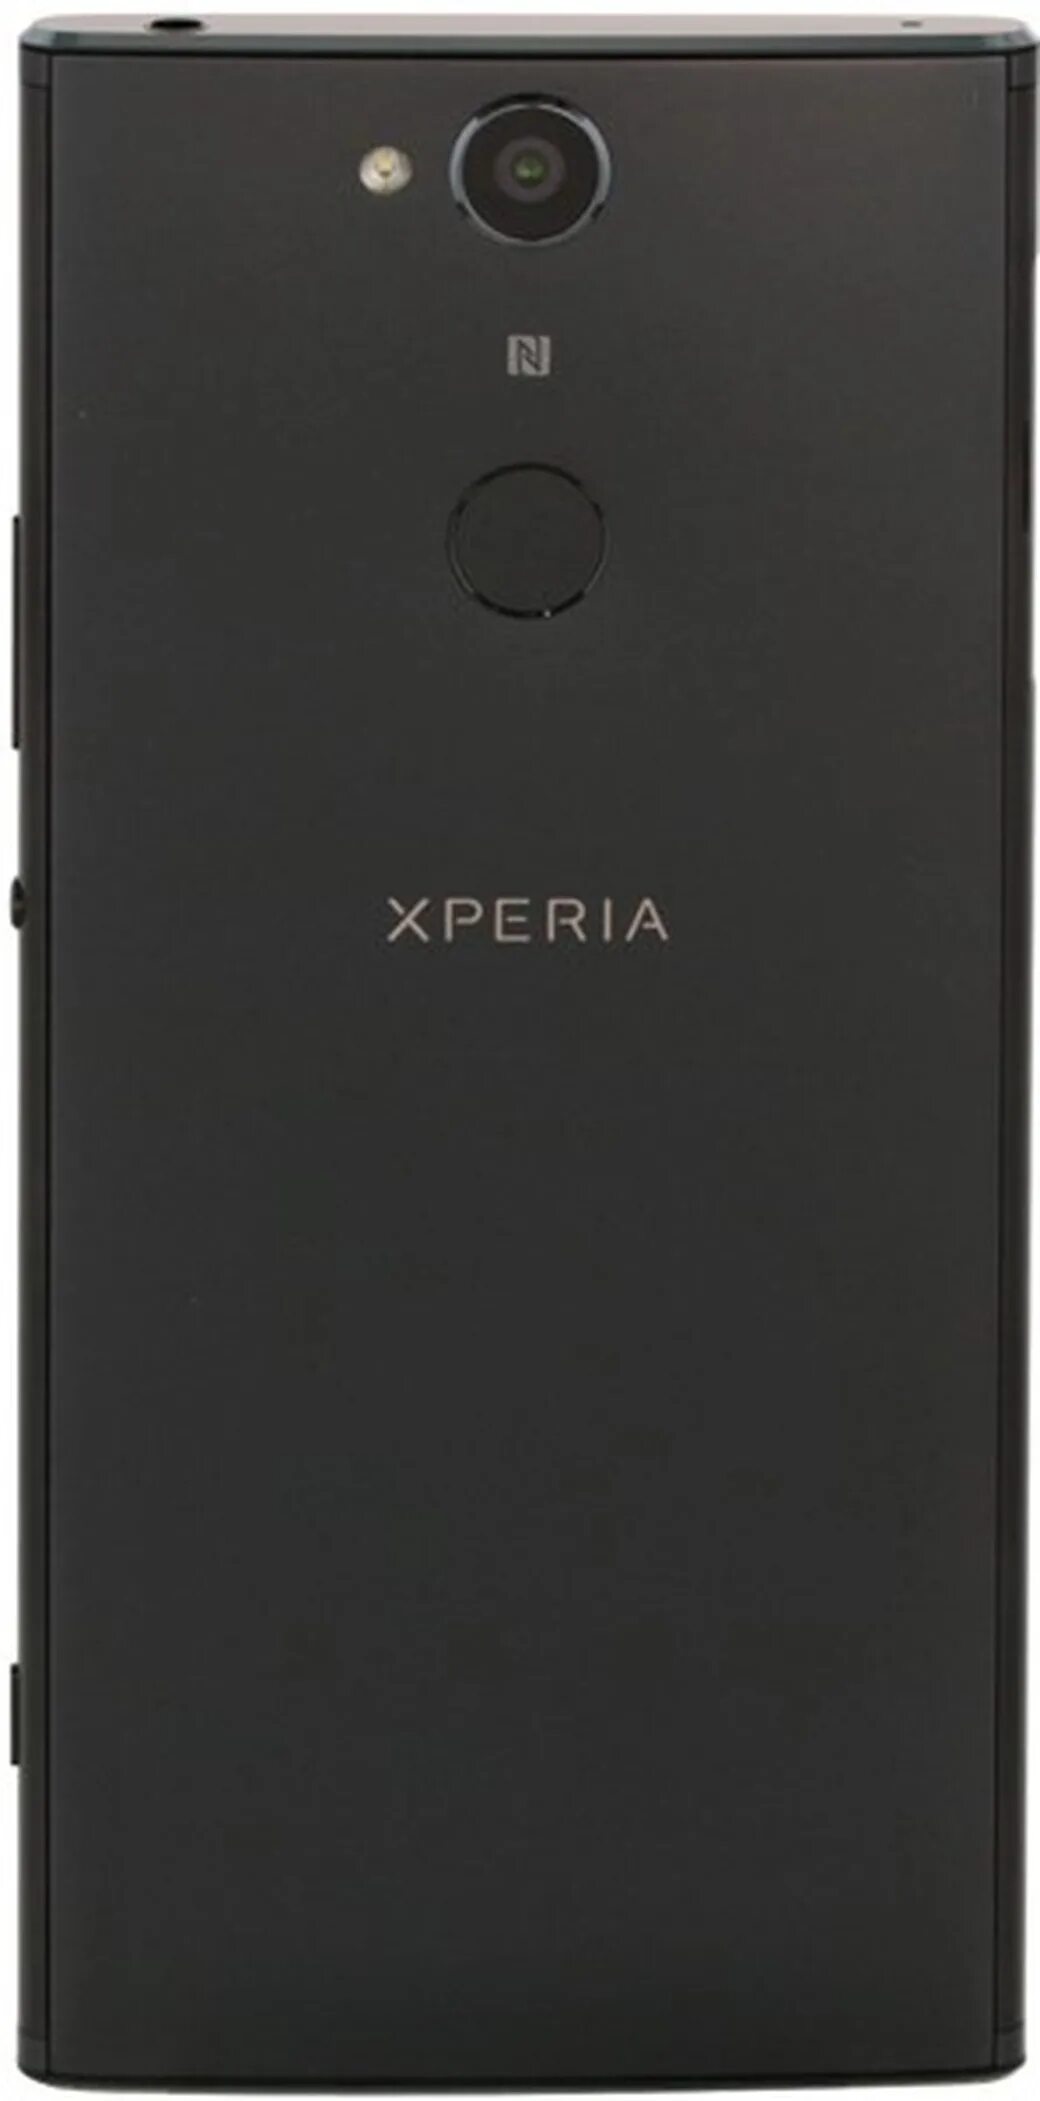 Sony Xperia xa2. Sony Xperia xa2 Dual. Sony Xperia xa2 Dual h4113. Sony xperia h4113